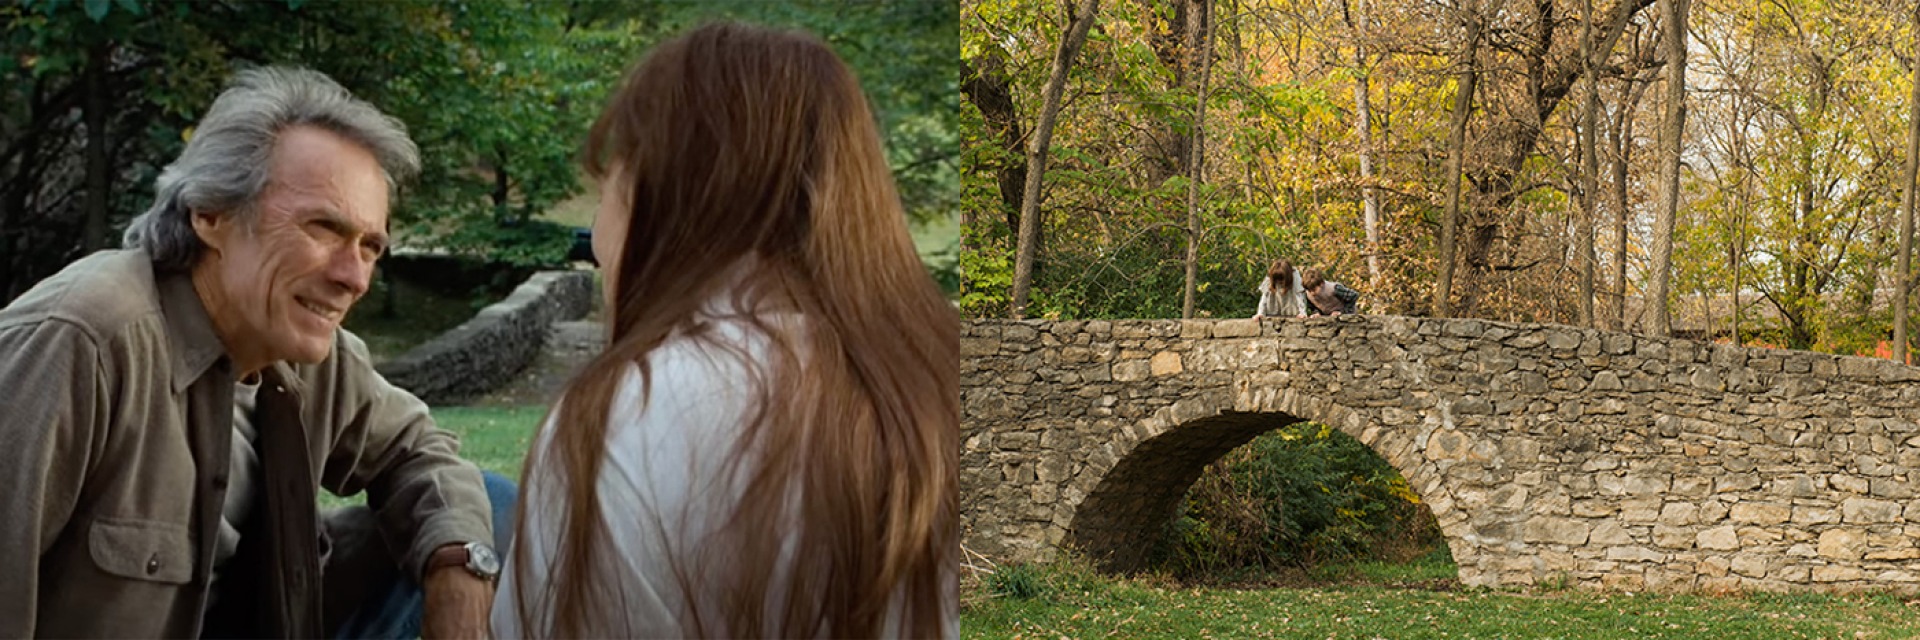 Stone Bridge from Picnic Scene in Movie